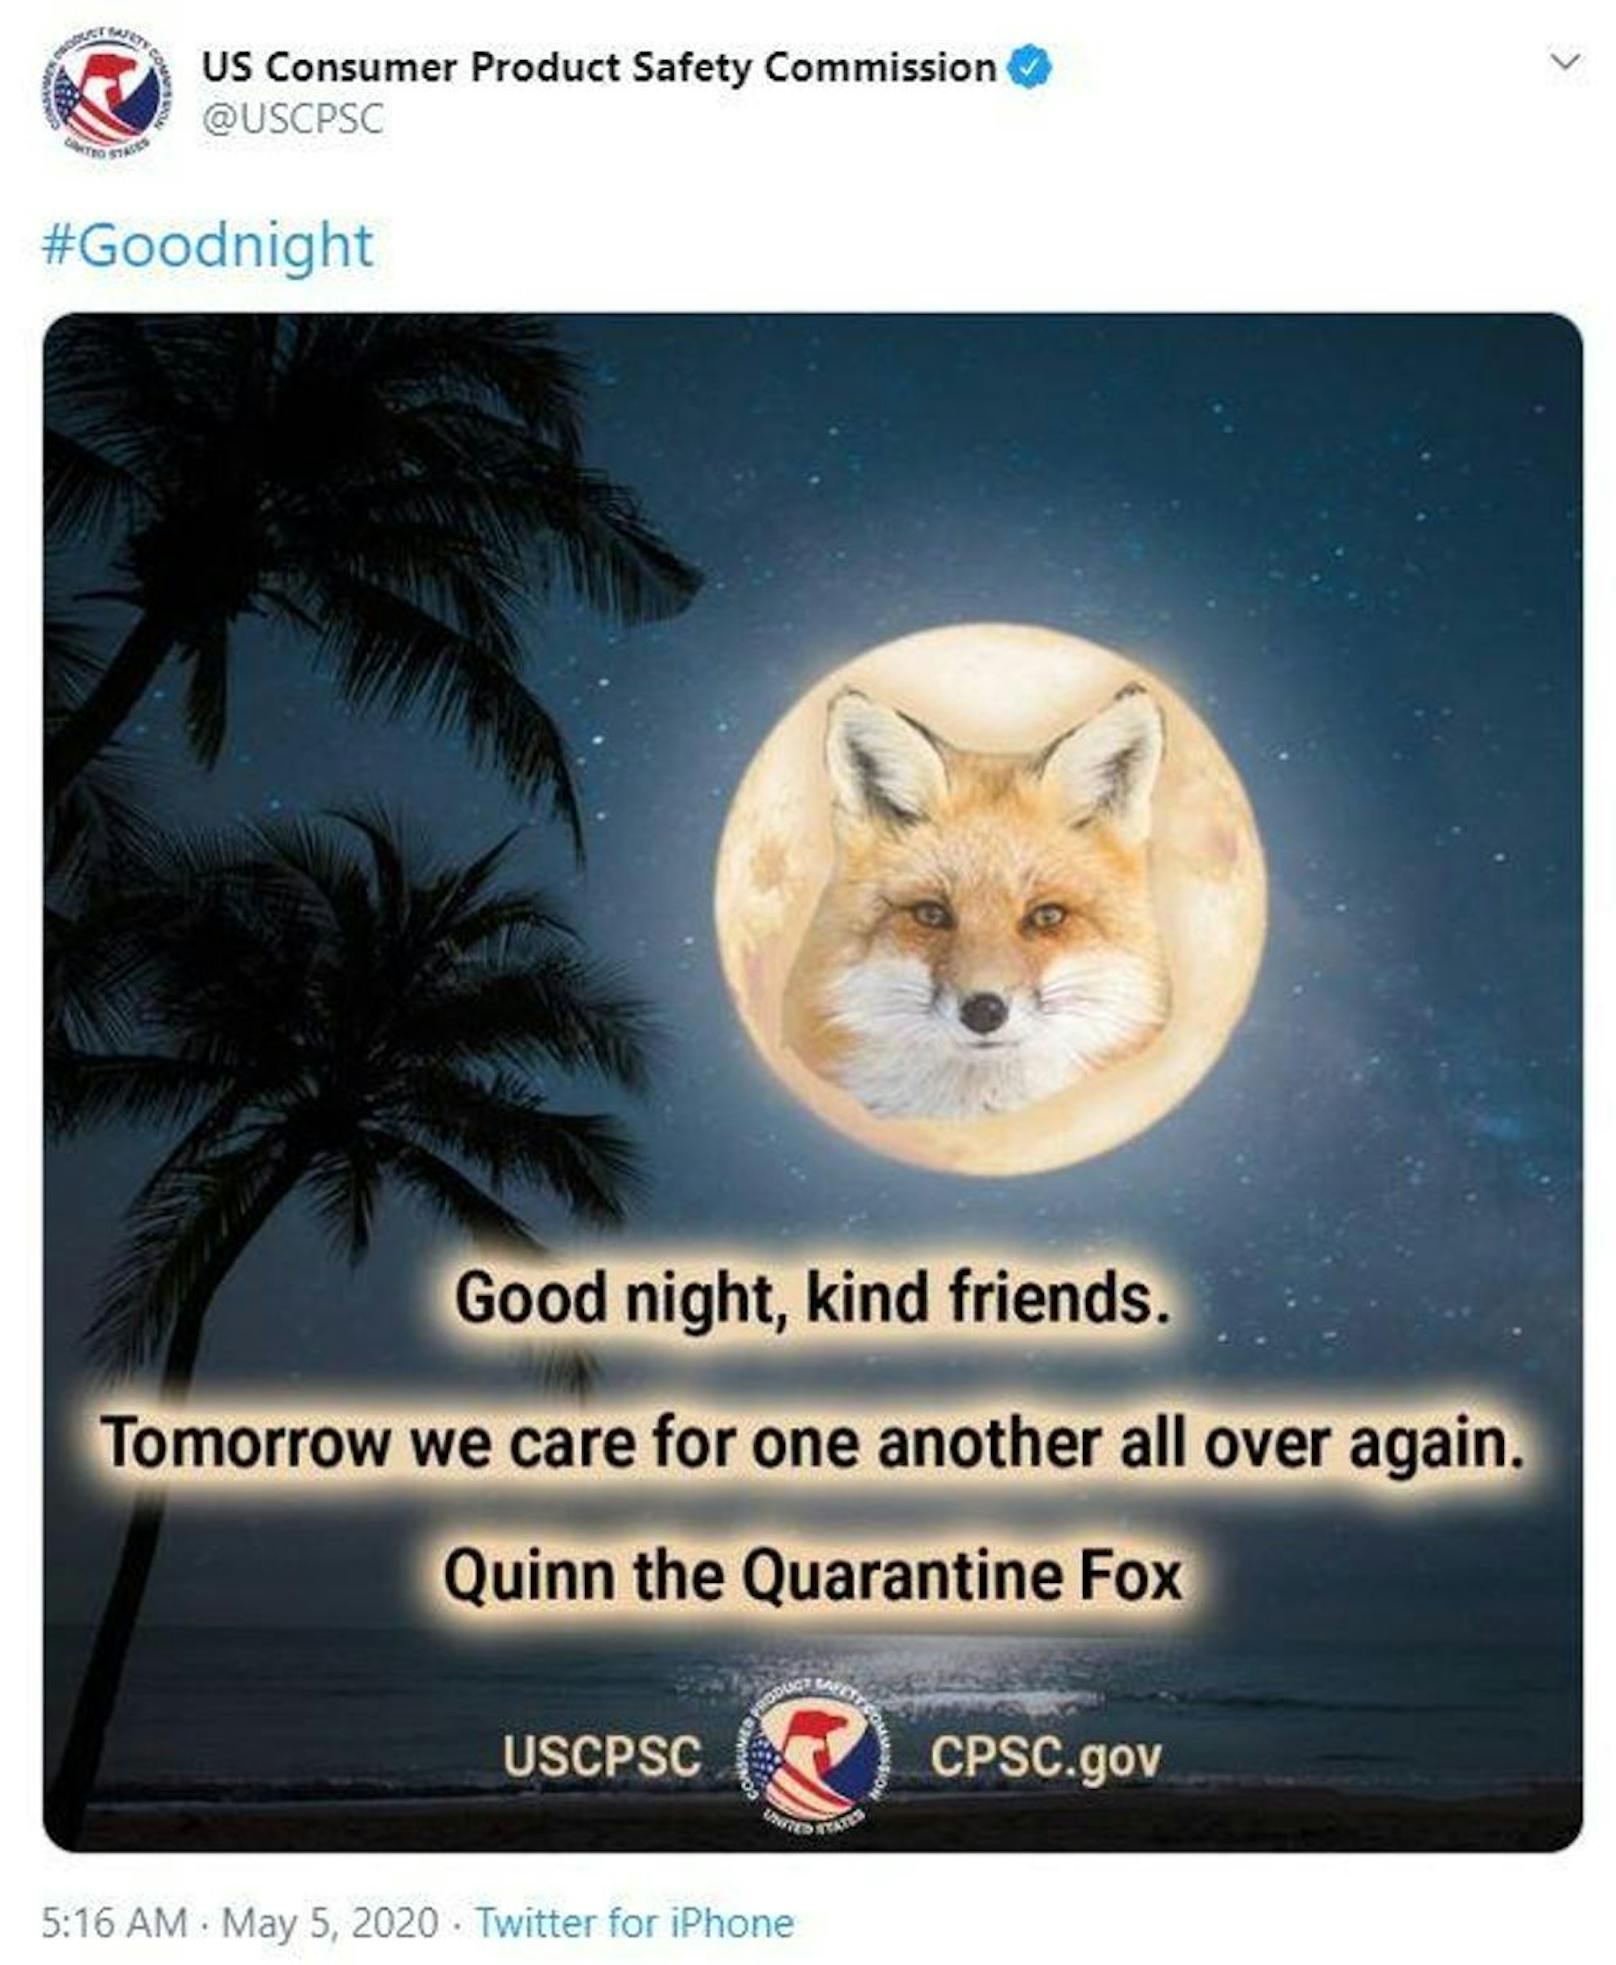 Gut kommt vor allem an, dass Quinn, der Fuchs, der Nation jeden Abend vor einem immer wechselnden Hintergrund wünscht: "Gute Nacht, freundliche Freunde. Morgen werden wir uns wieder alle umeinander sorgen."